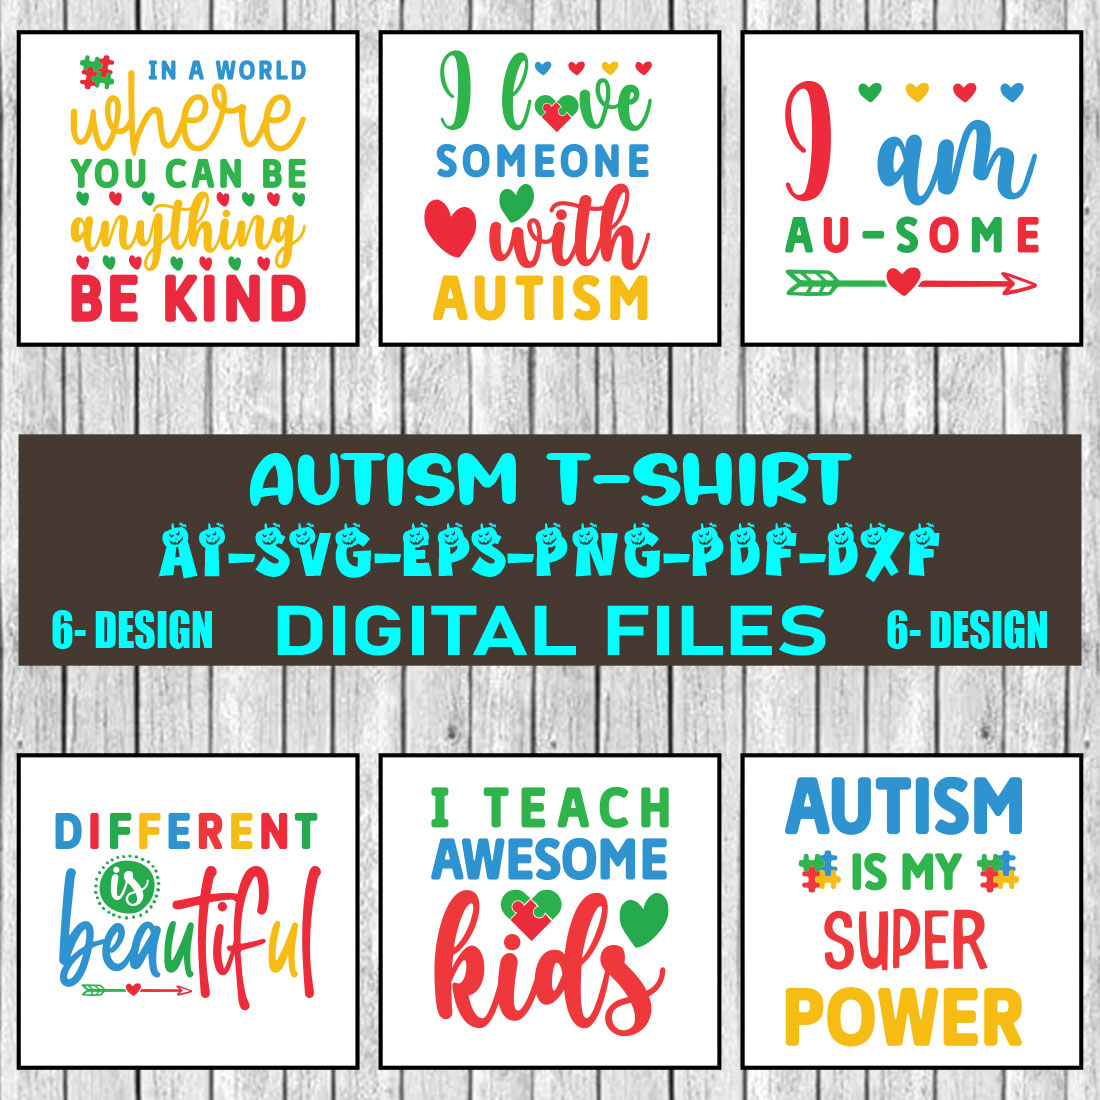 Autism T-shirt Design Bundle Vol-1 cover image.